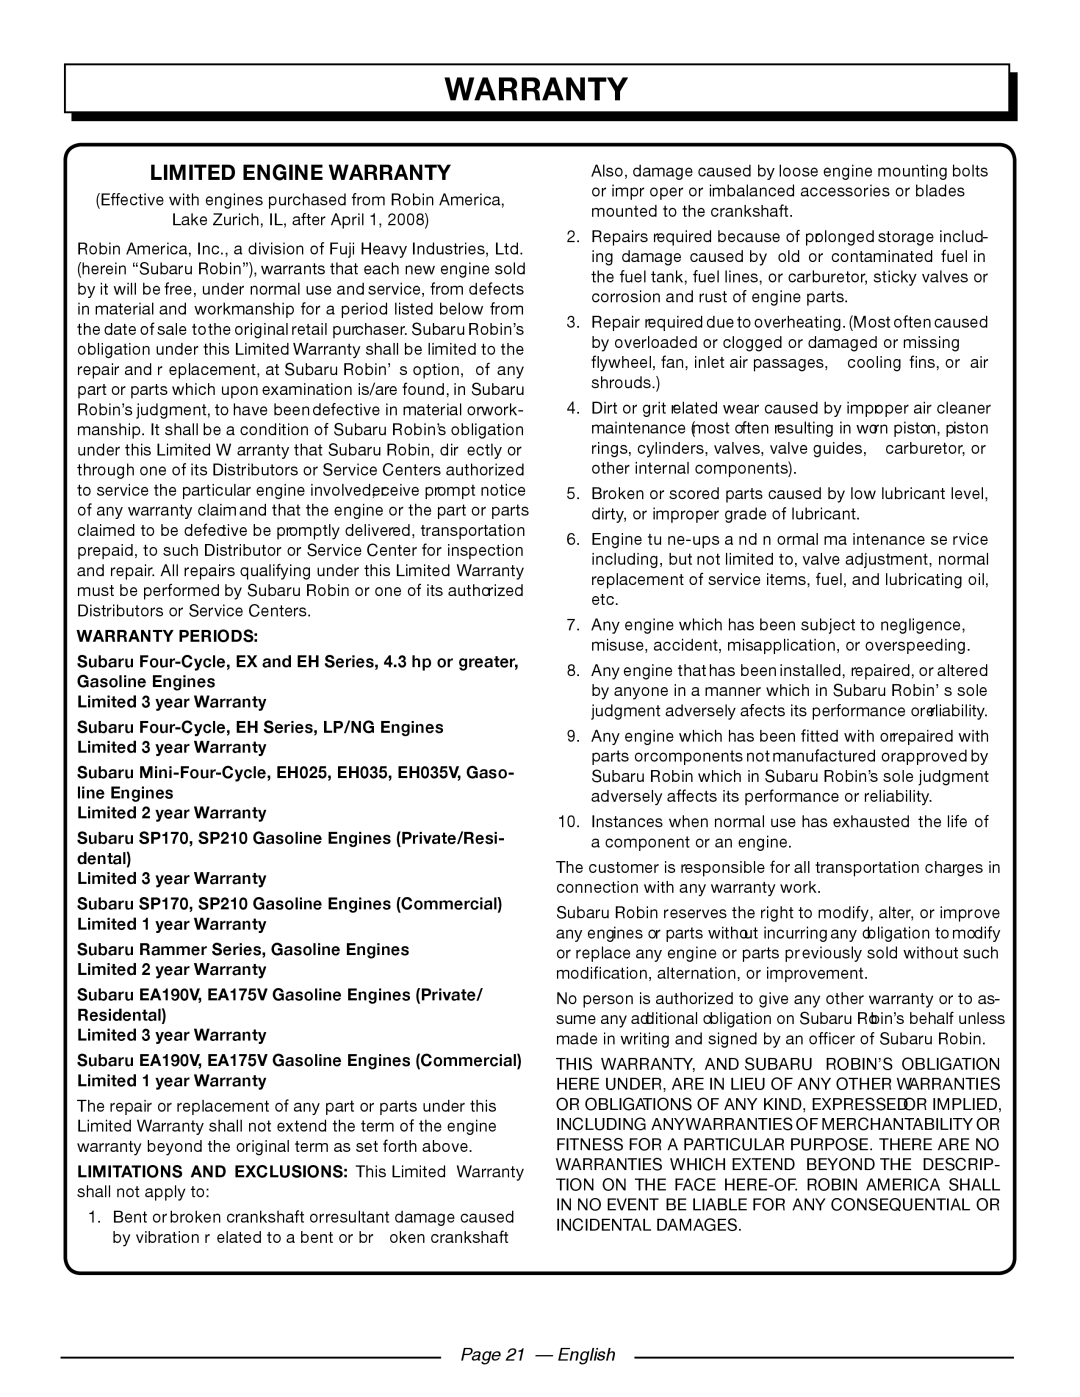 Homelite UT80709, UT80911 manuel dutilisation Limited Engine Warranty, Page 21 - English 